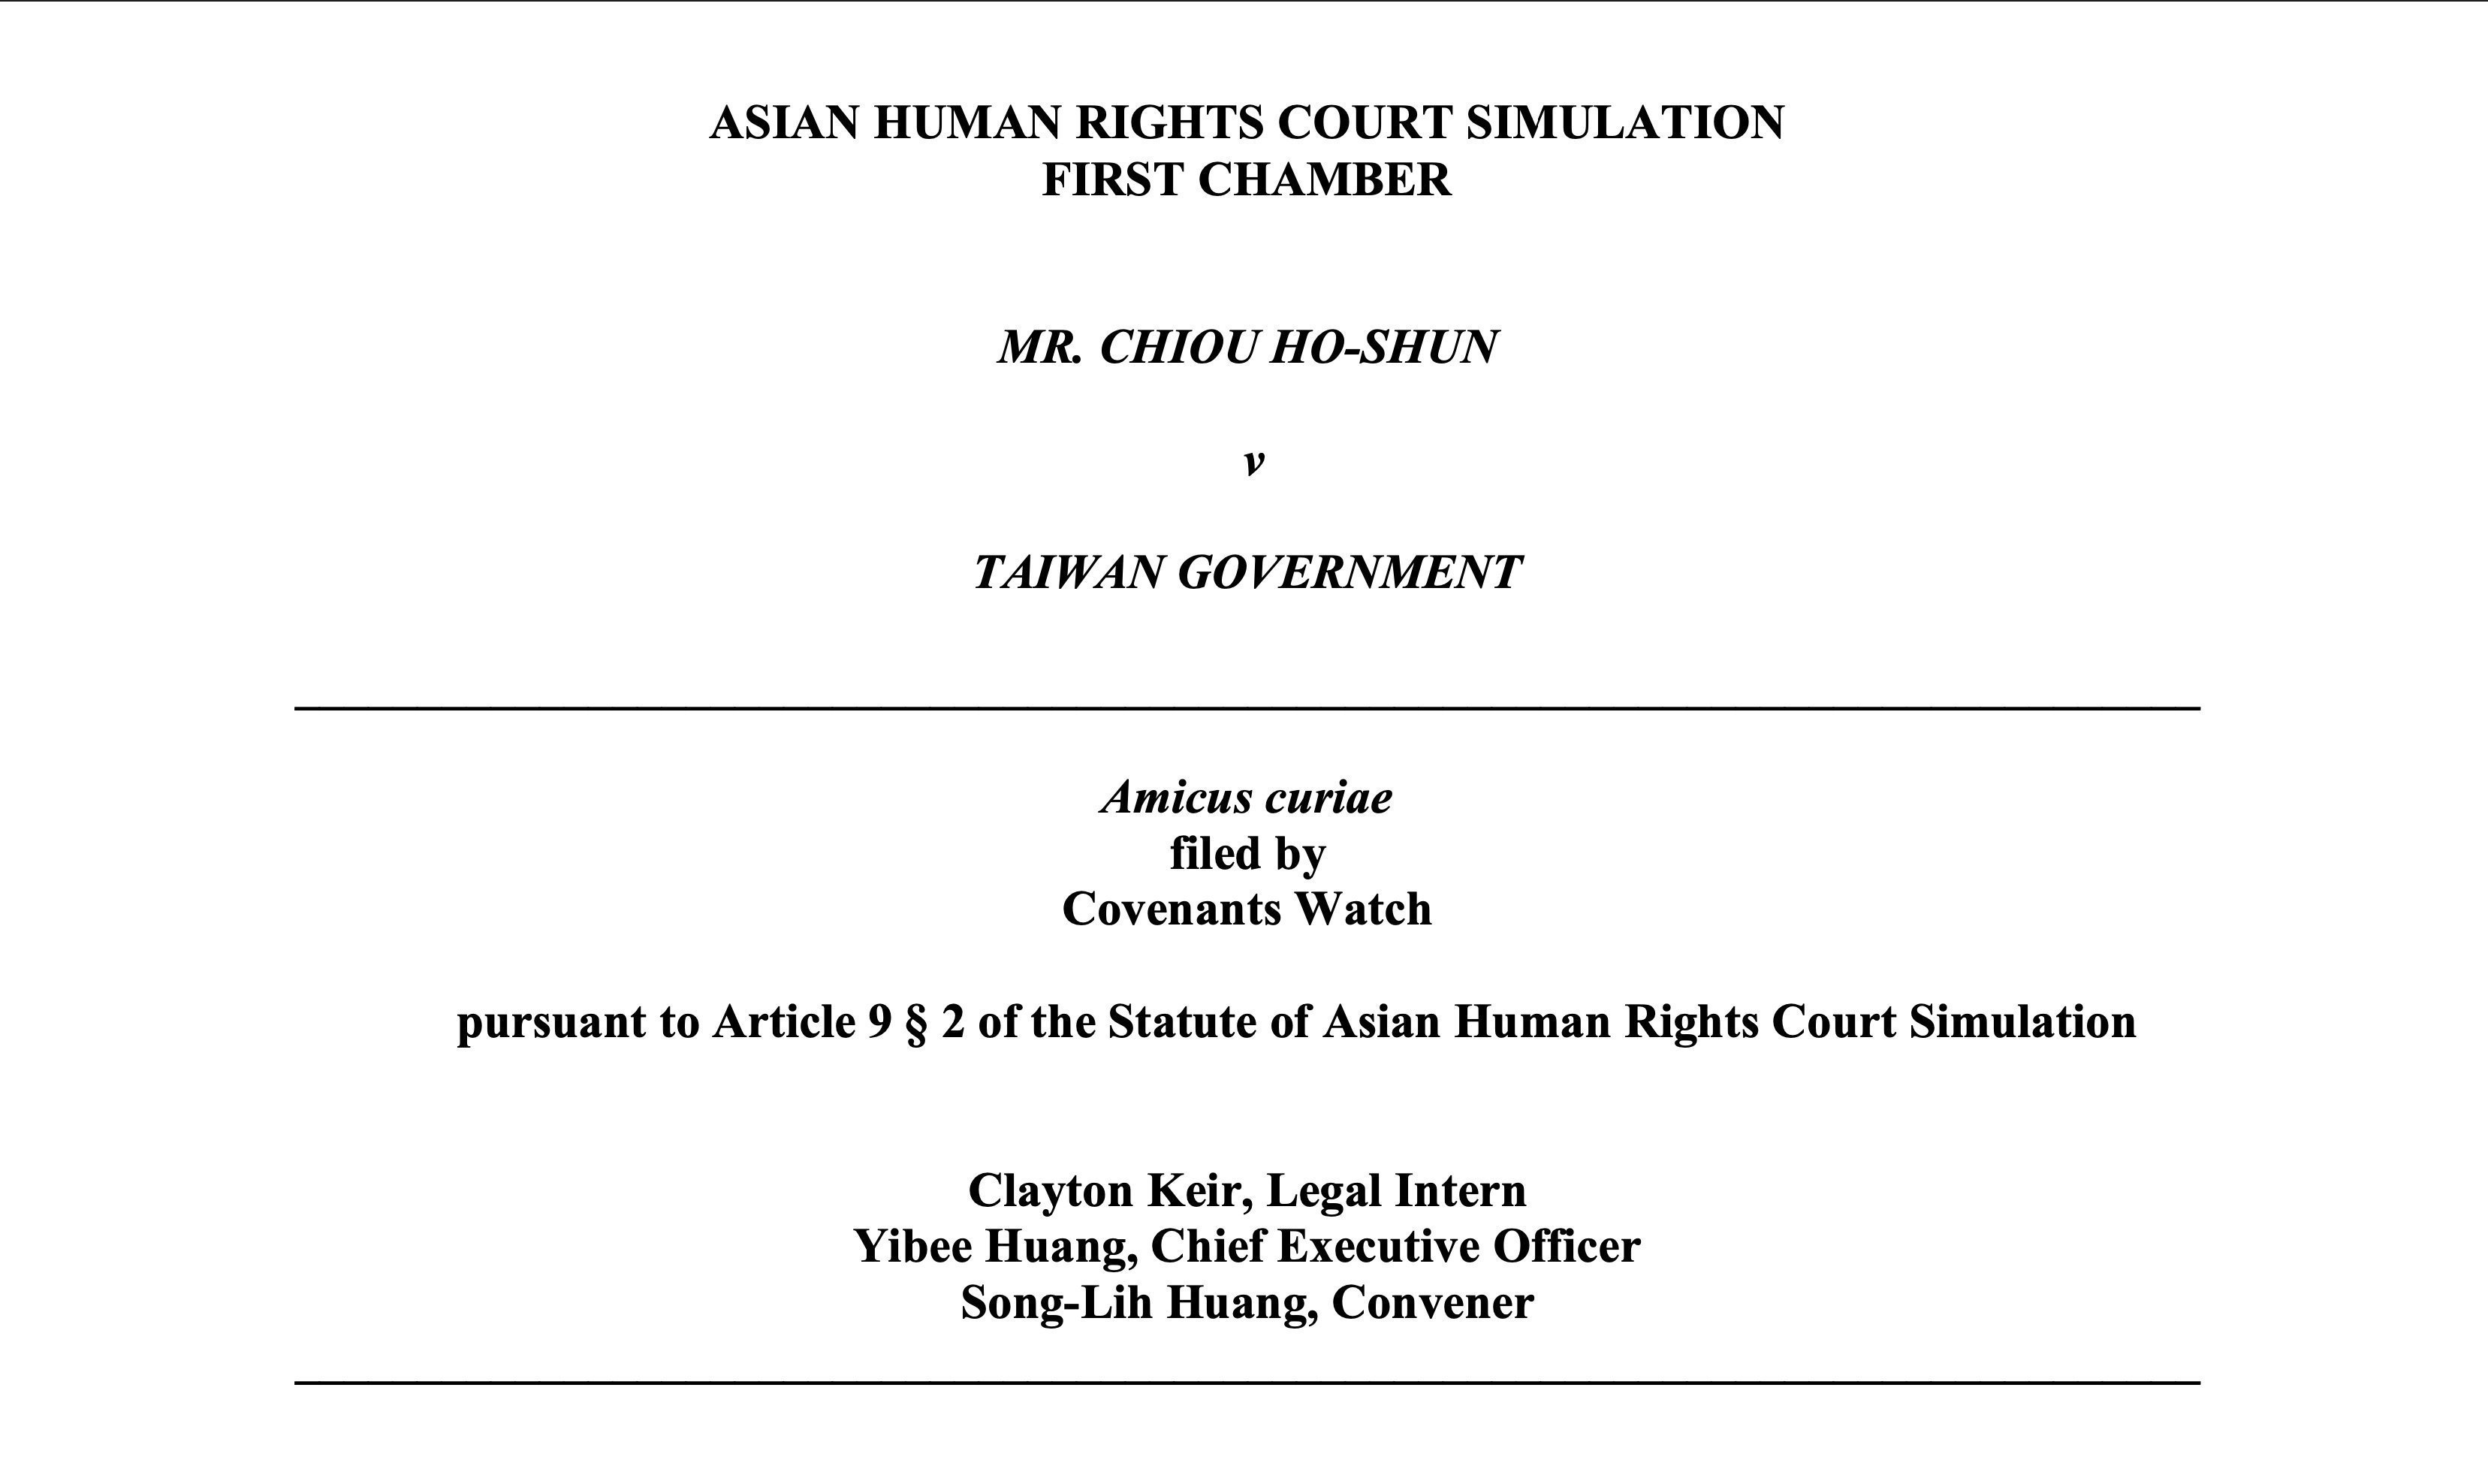 2019年7月27日於模擬亞洲人權法院上所朗讀之法庭之友意見書摘要